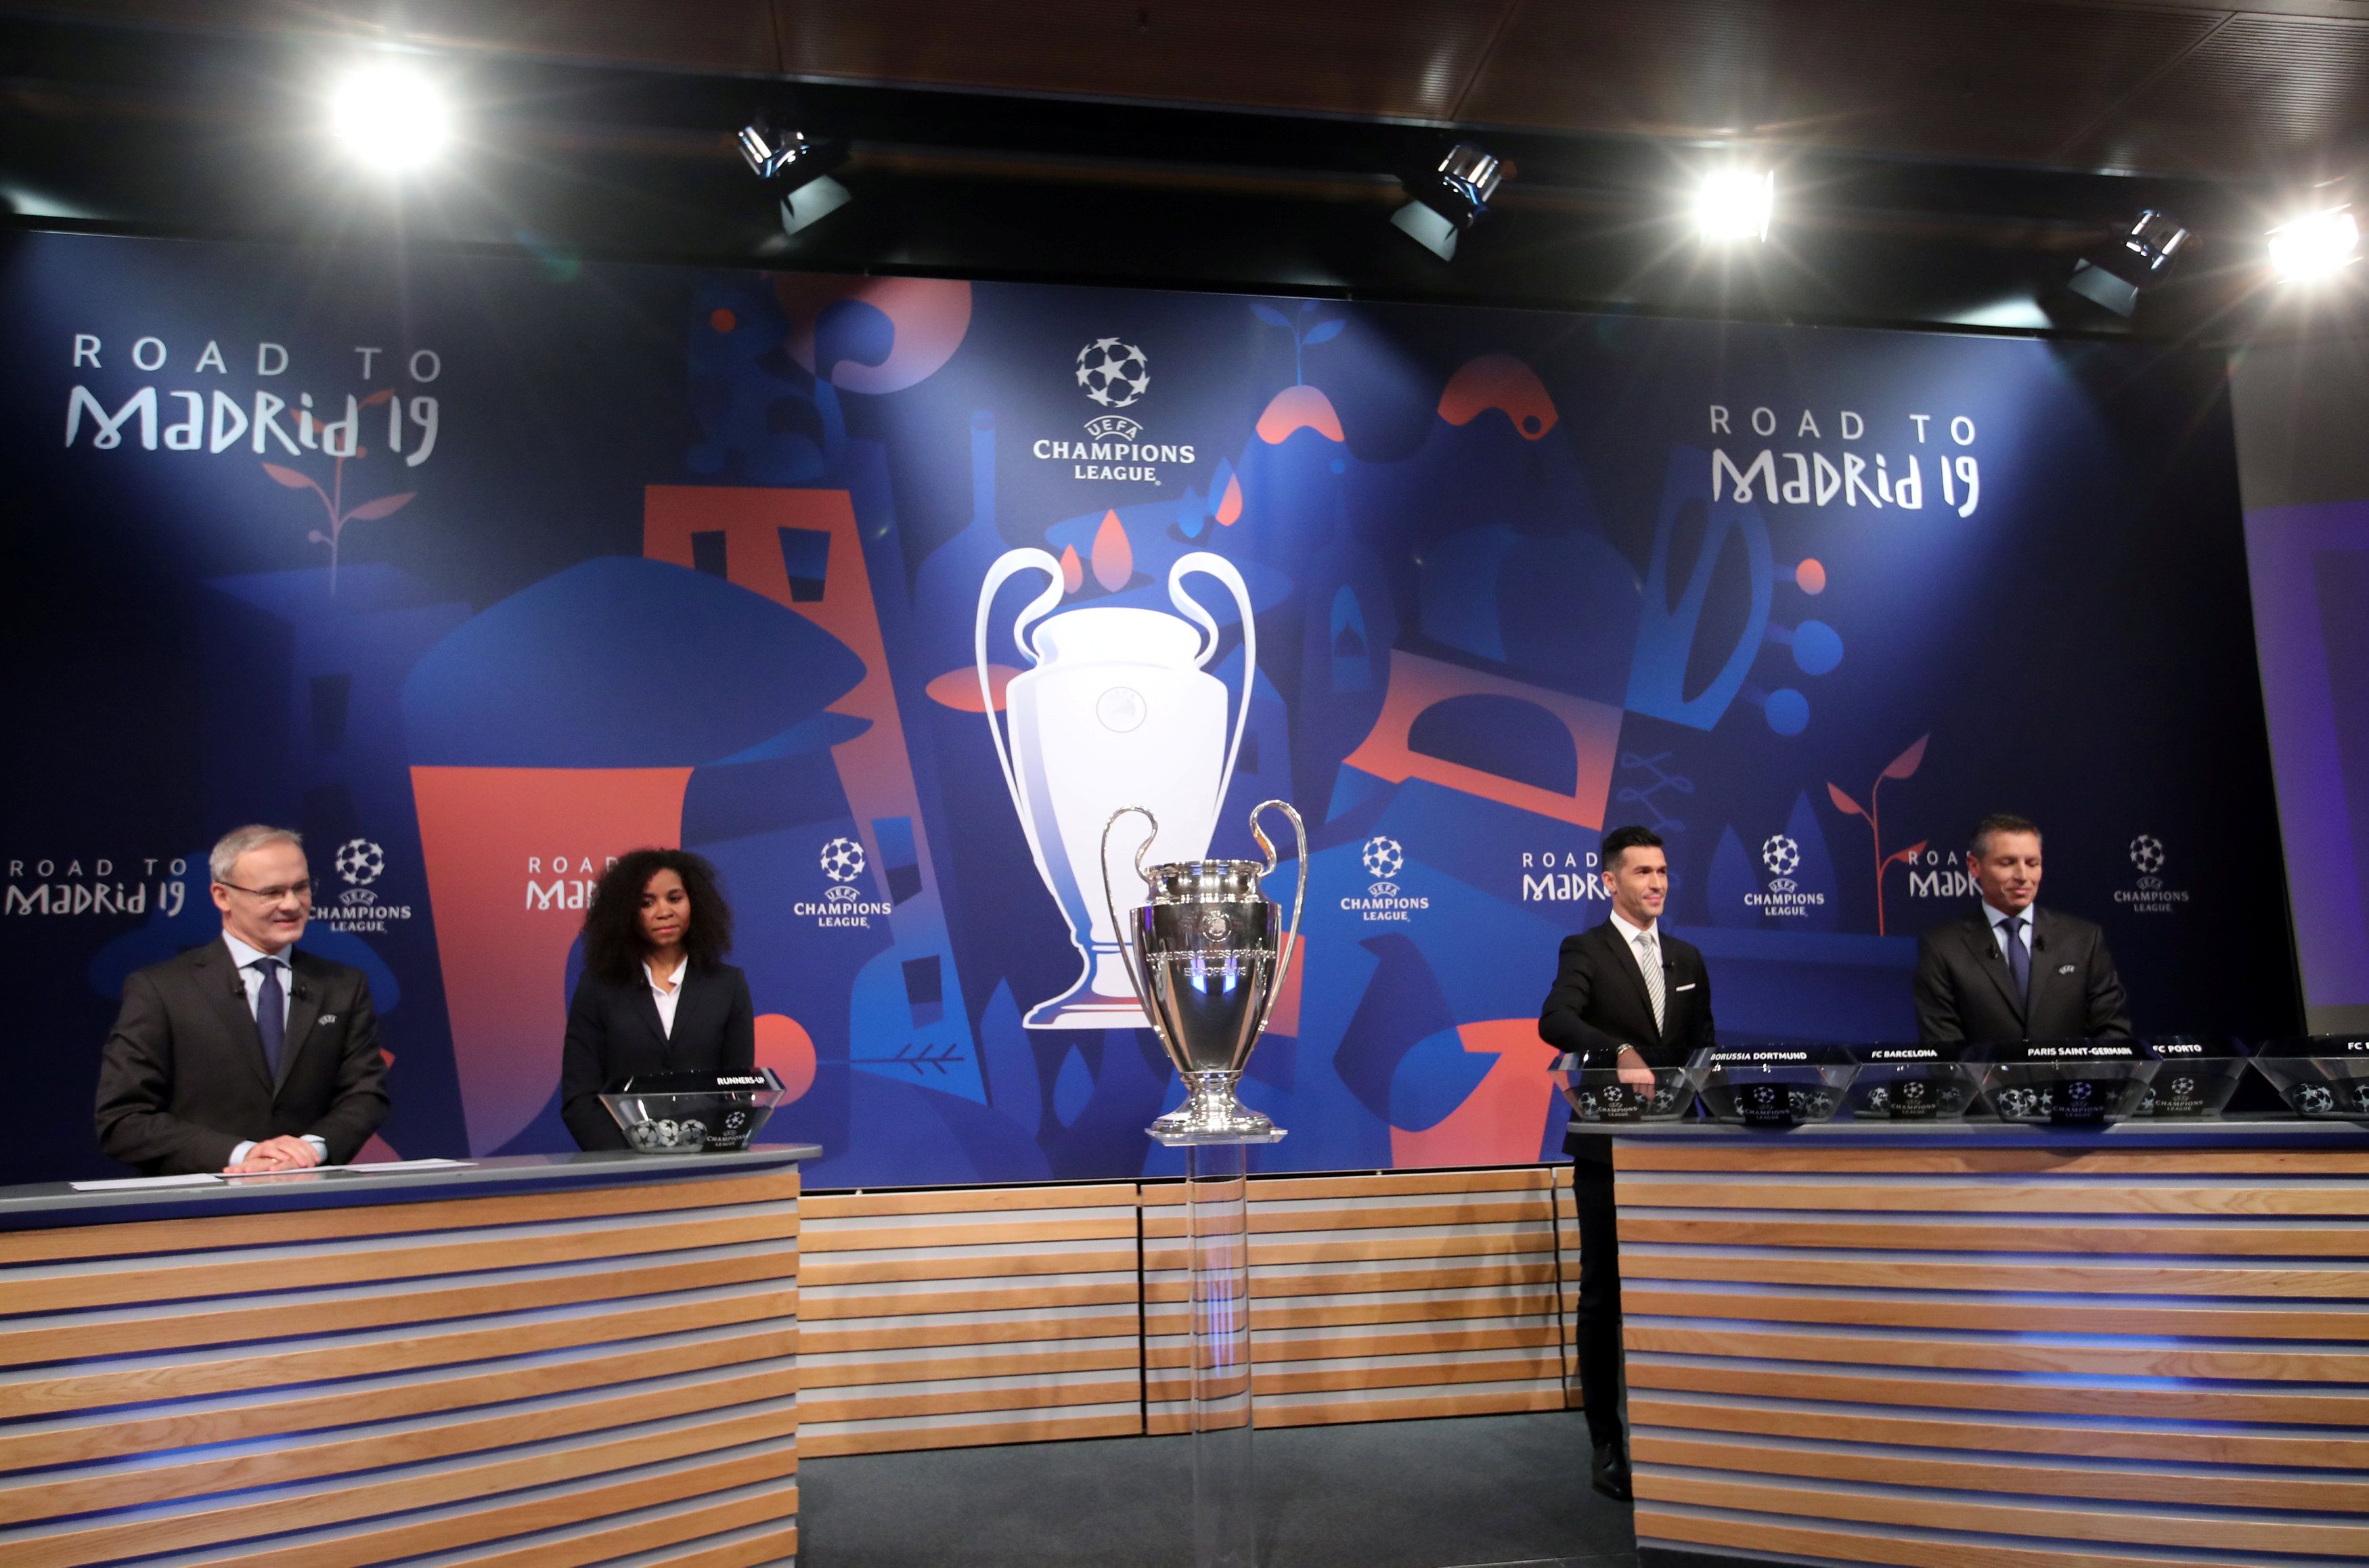 La gran final de la Liga de Campeones se jugará el 1 de junio en Madrid.